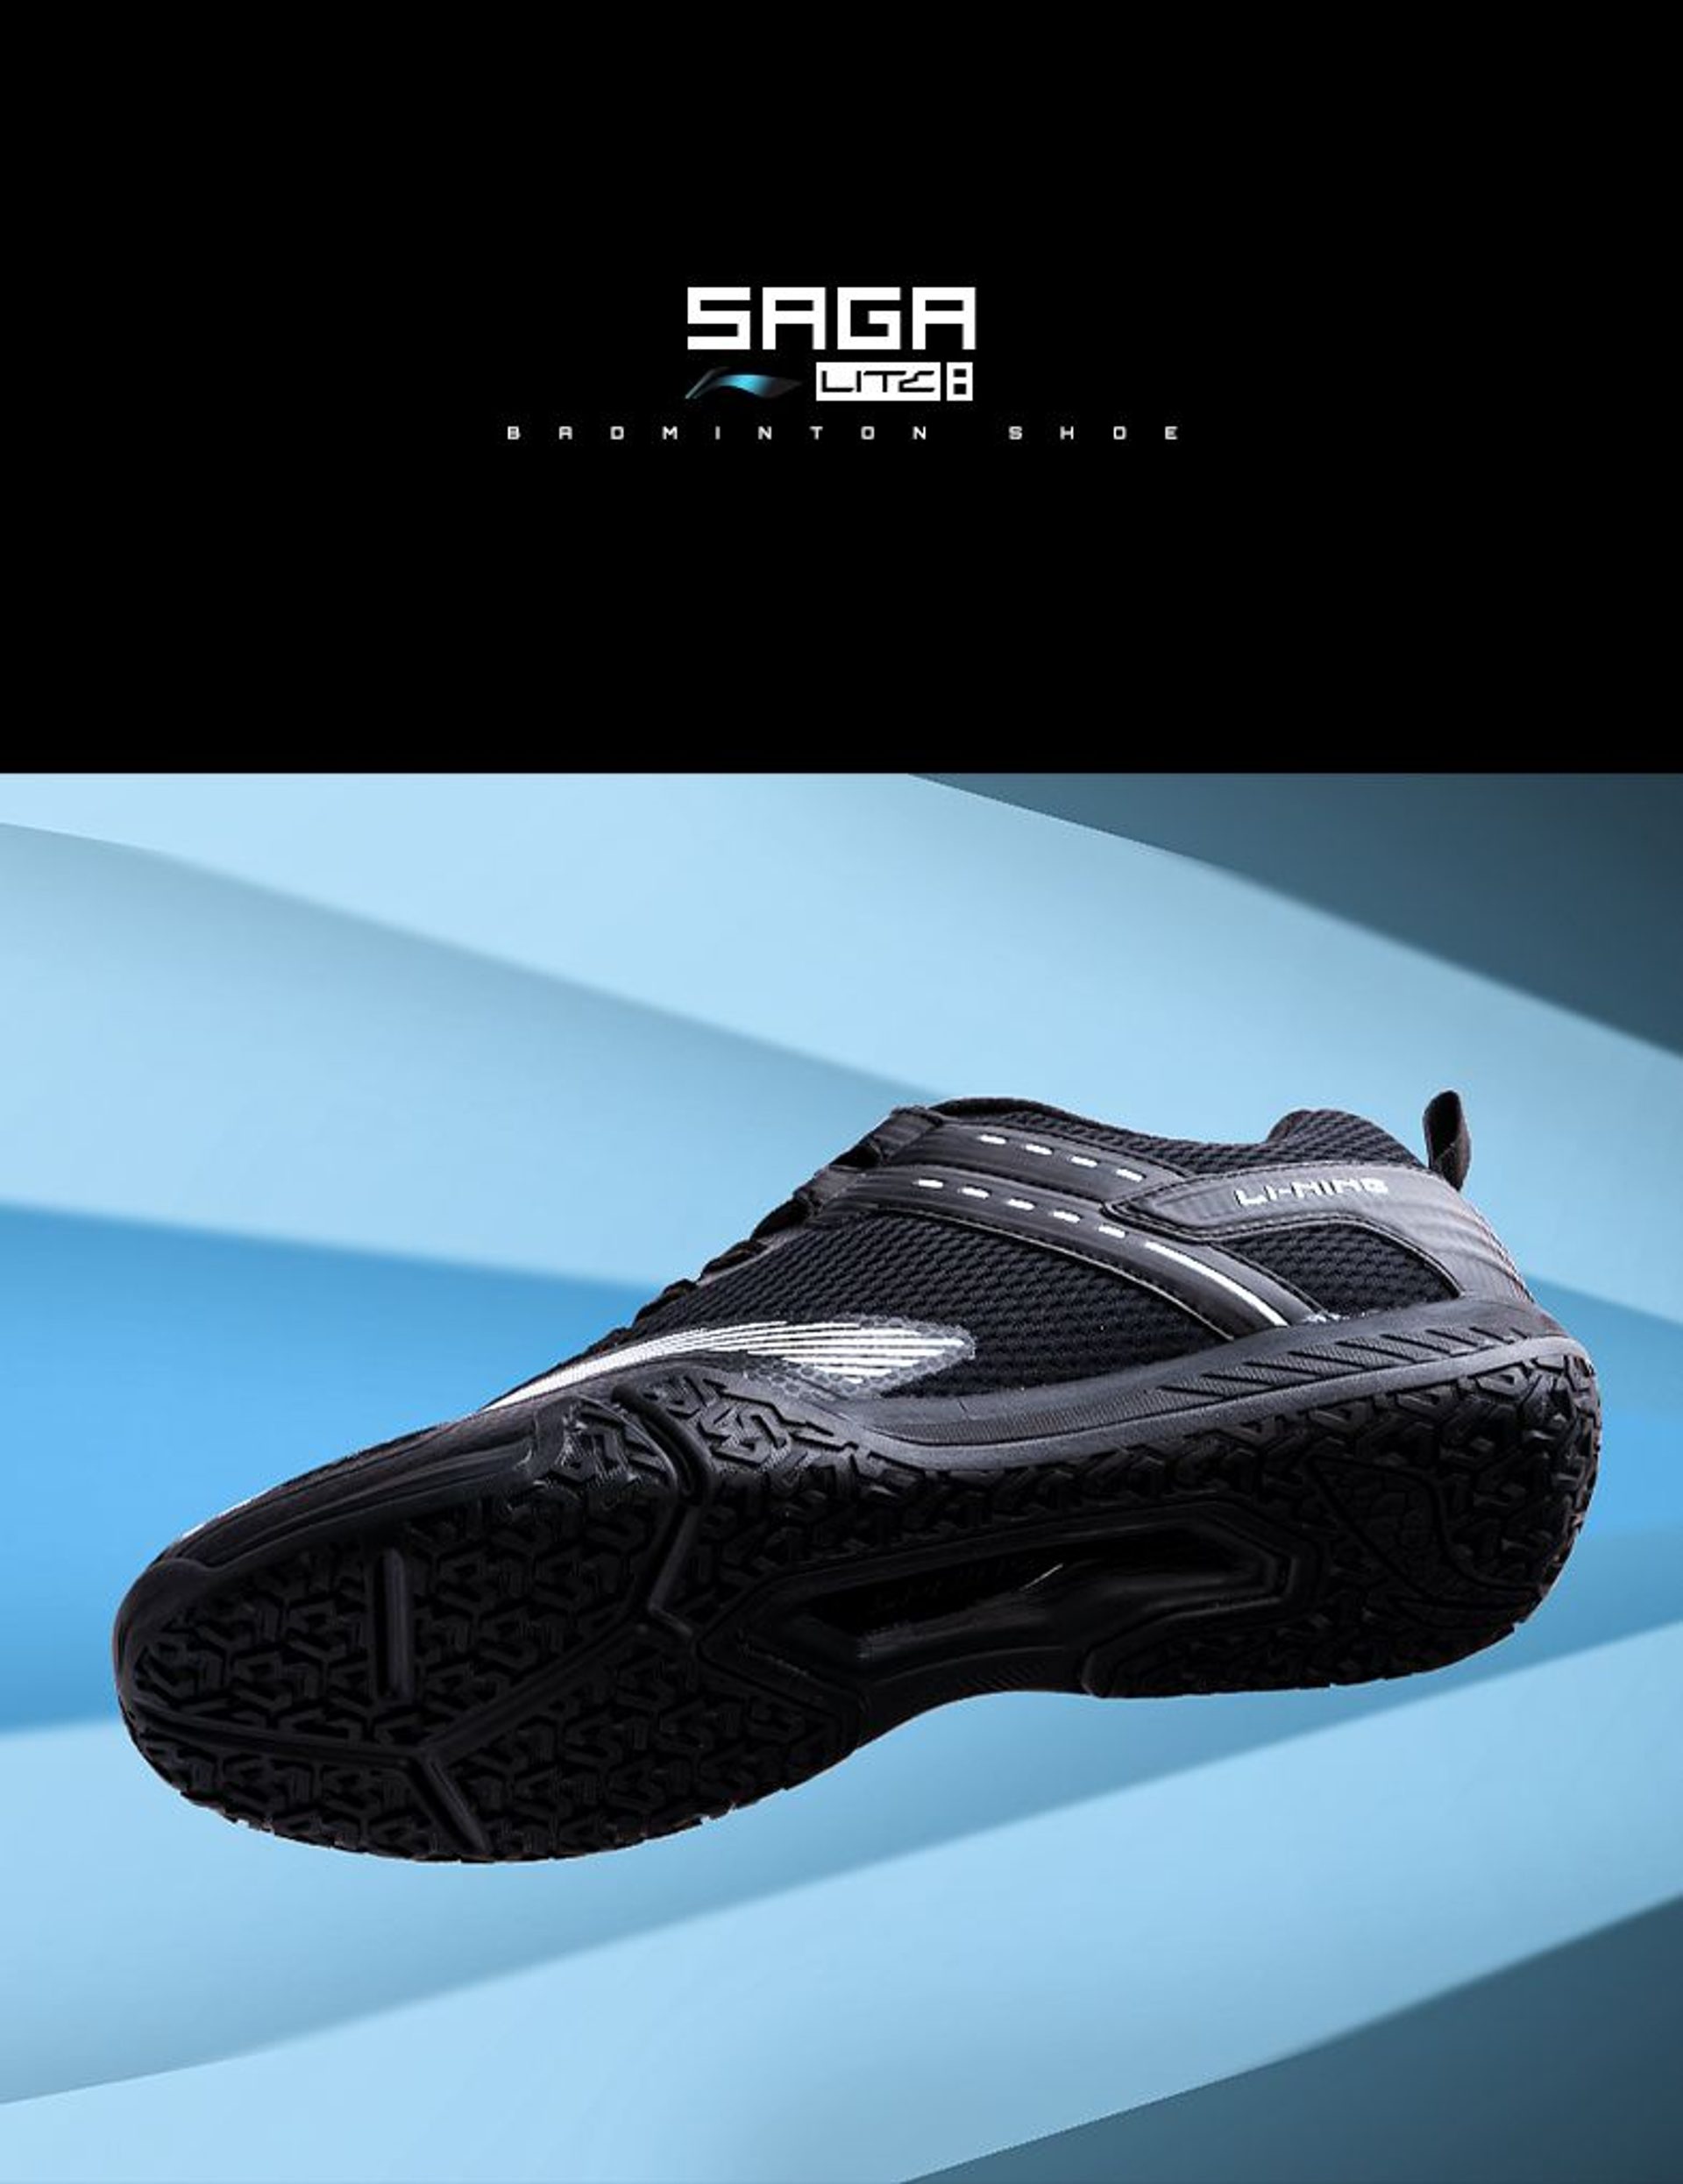 Saga Lite 8 - Badminton Shoe